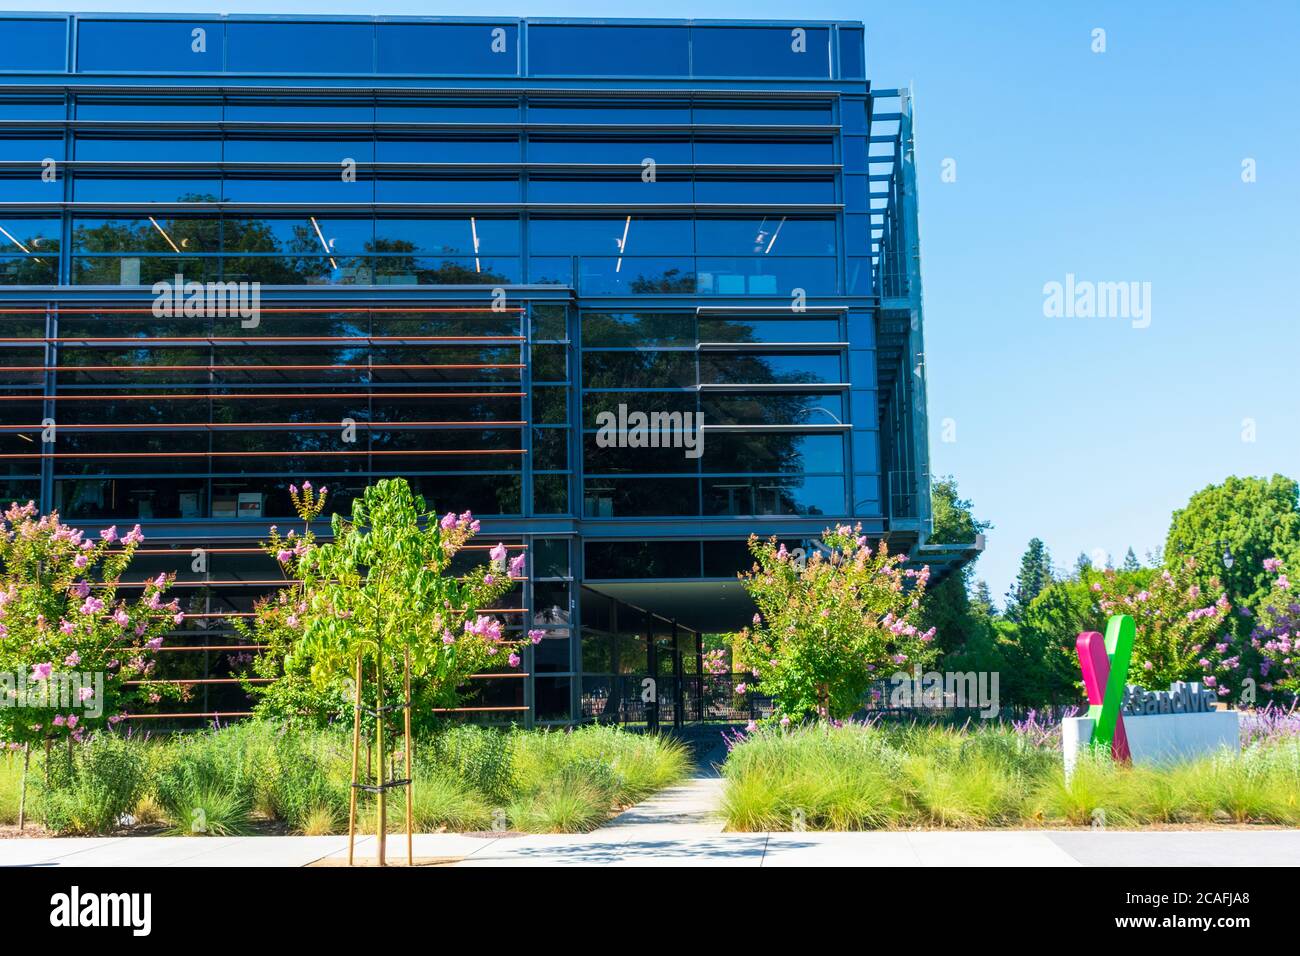 23andMe sede centrale di un'azienda privata di genomica personale e biotecnologia a Silicon Valley - Sunnyvale, California, USA - 2020 Foto Stock